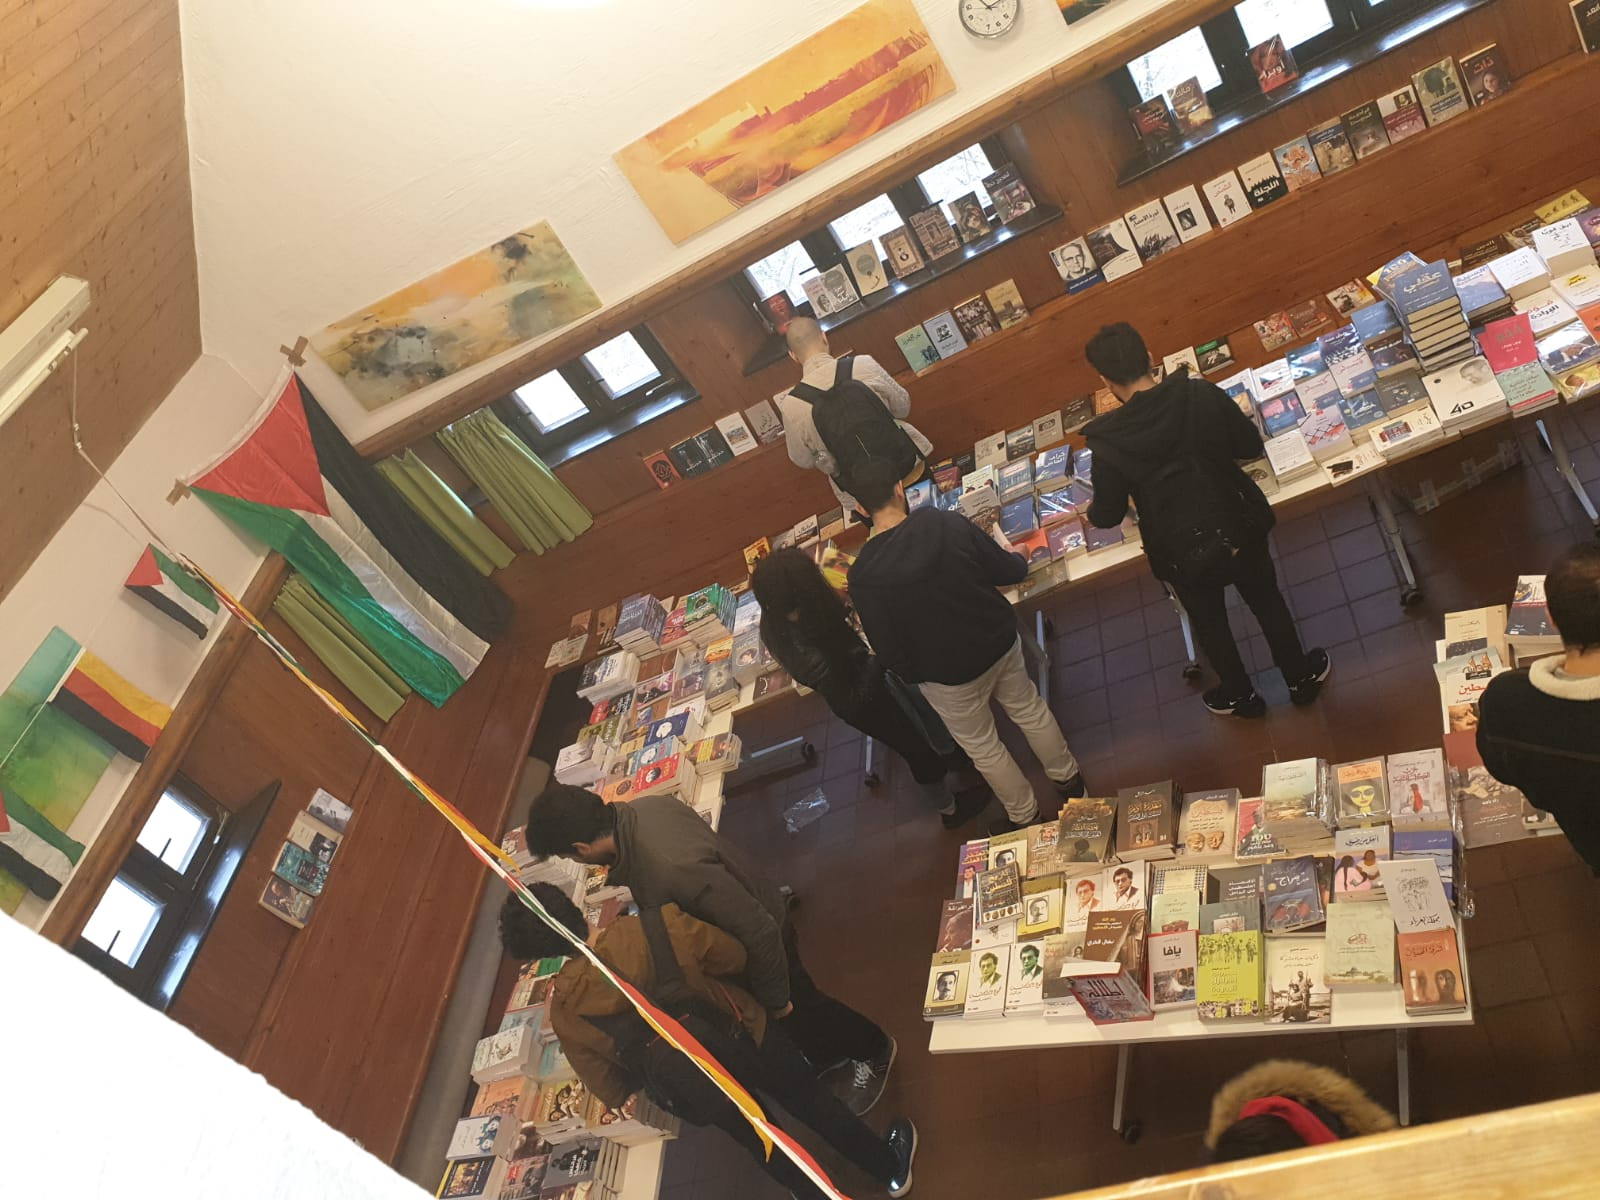 مركز دارنا للتراث الفلسطيني يشارك في المعرض الكتاب العربي وبالتعاون مع منتدى القدس الثقافي في مدينة ايرلانغن / المانيا